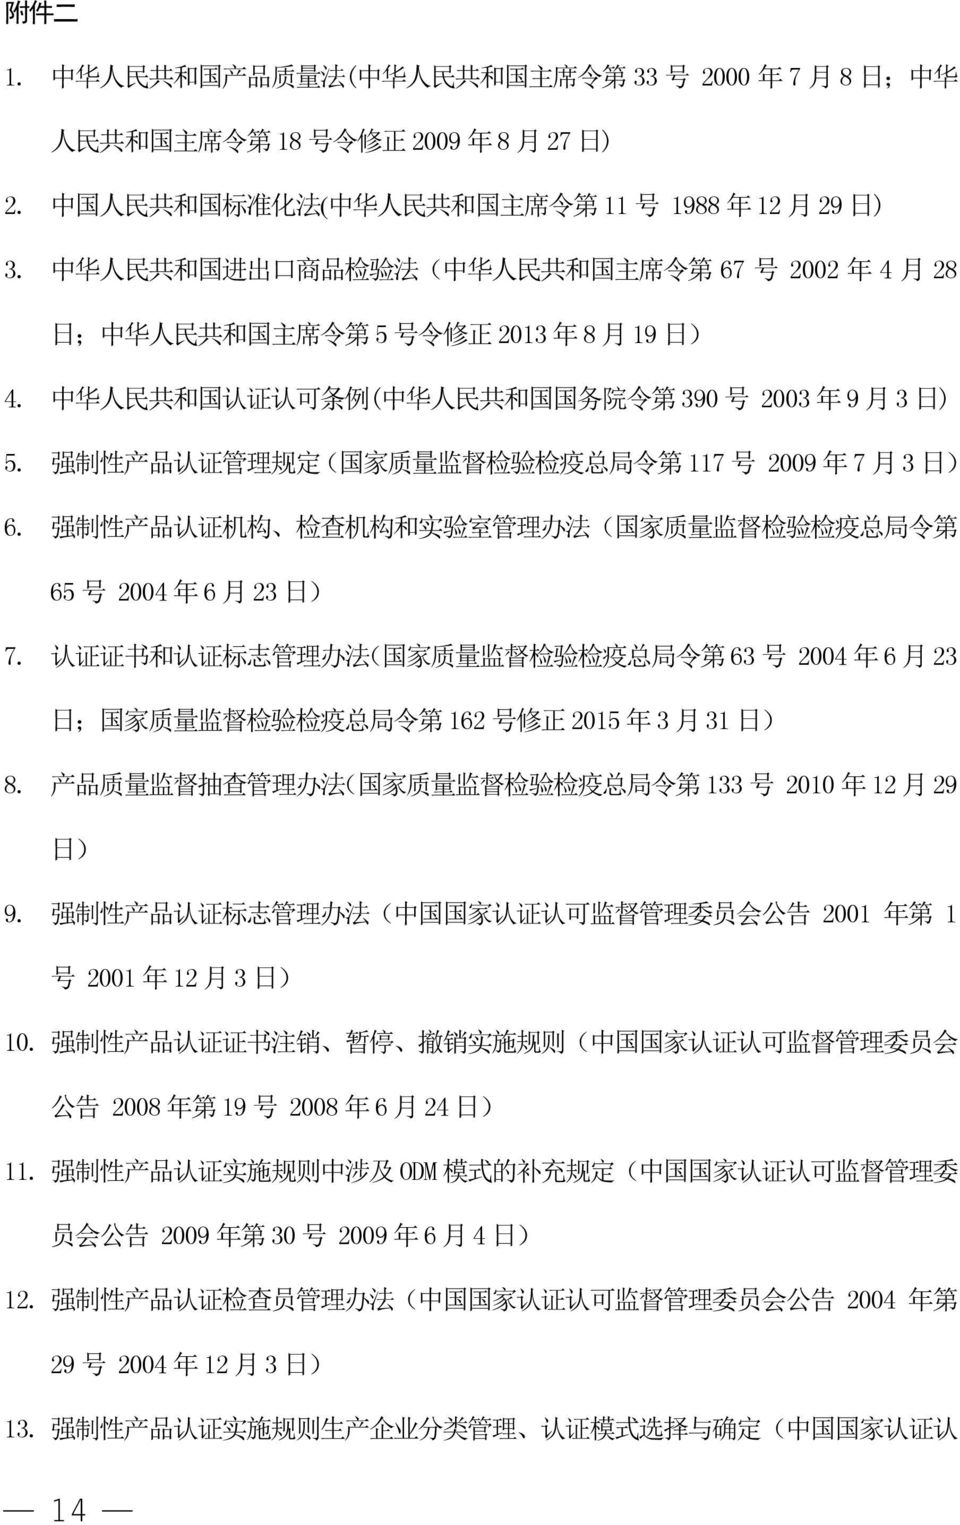 中 华 人 民 共 和 国 进 出 口 商 品 检 验 法 ( 中 华 人 民 共 和 国 主 席 令 第 67 号 2002 年 4 月 28 日 ; 中 华 人 民 共 和 国 主 席 令 第 5 号 令 修 正 2013 年 8 月 19 日 ) 4.